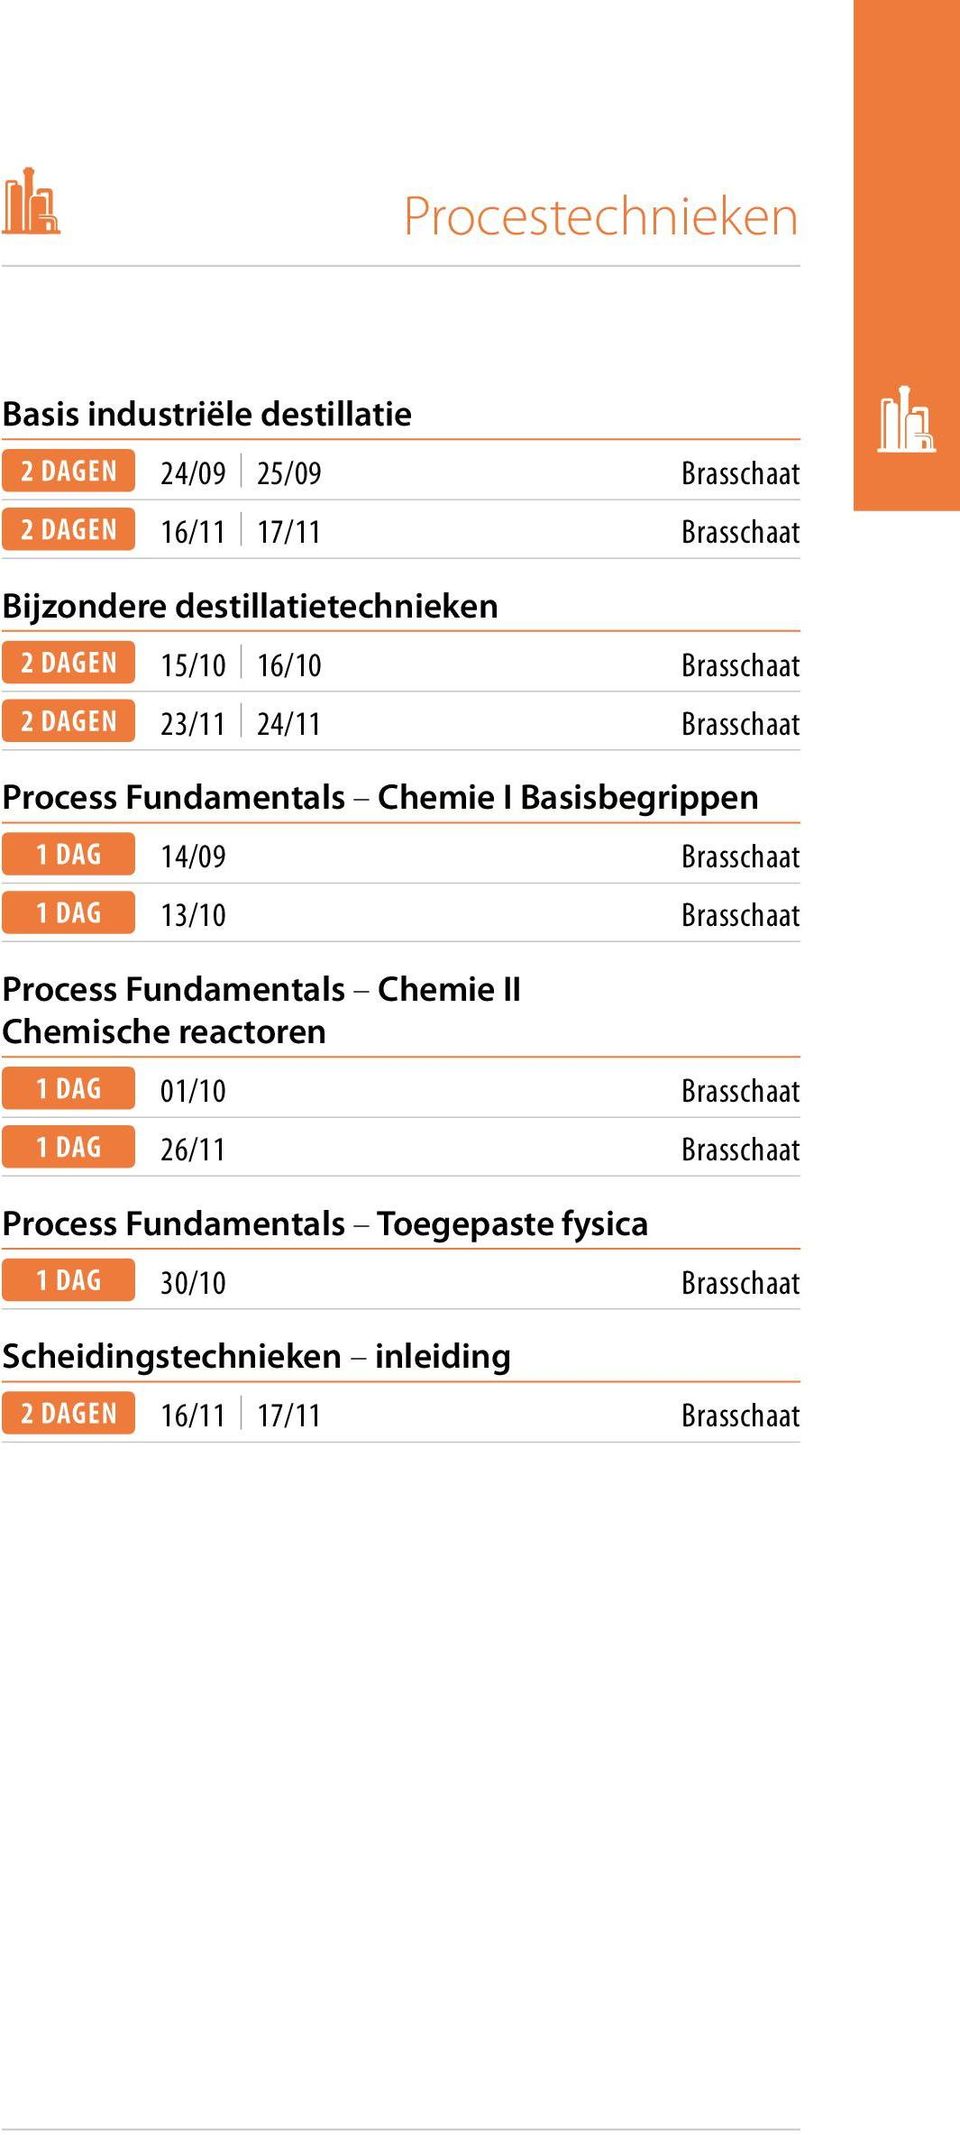 Basisbegrippen 14/09 Brasschaat 13/10 Brasschaat Process Fundamentals Chemie II Chemische reactoren 01/10